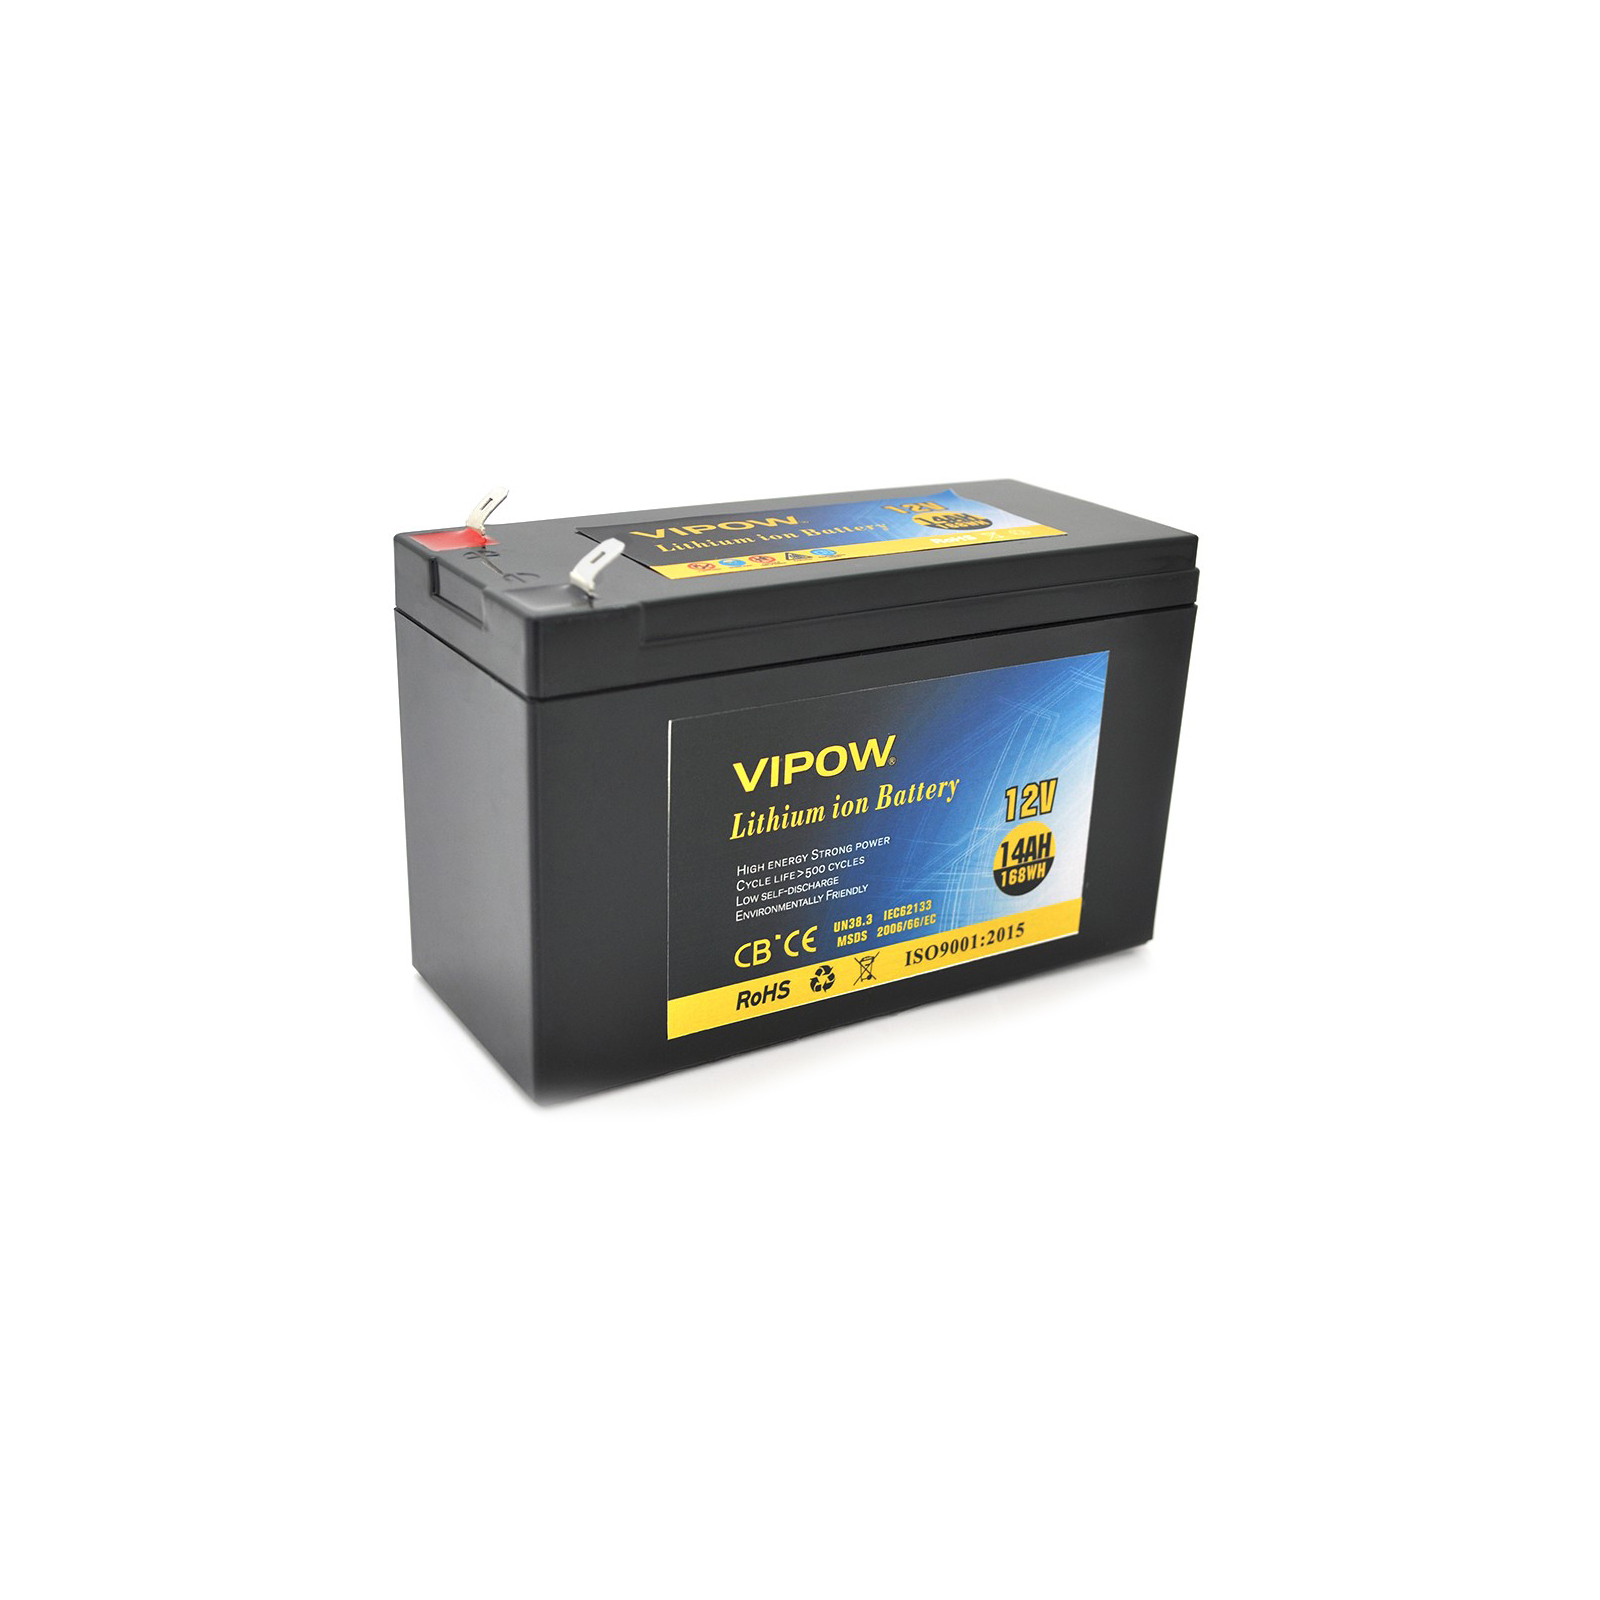 Батарея к ИБП Vipow 12V - 14Ah Li-ion (VP-12140LI)